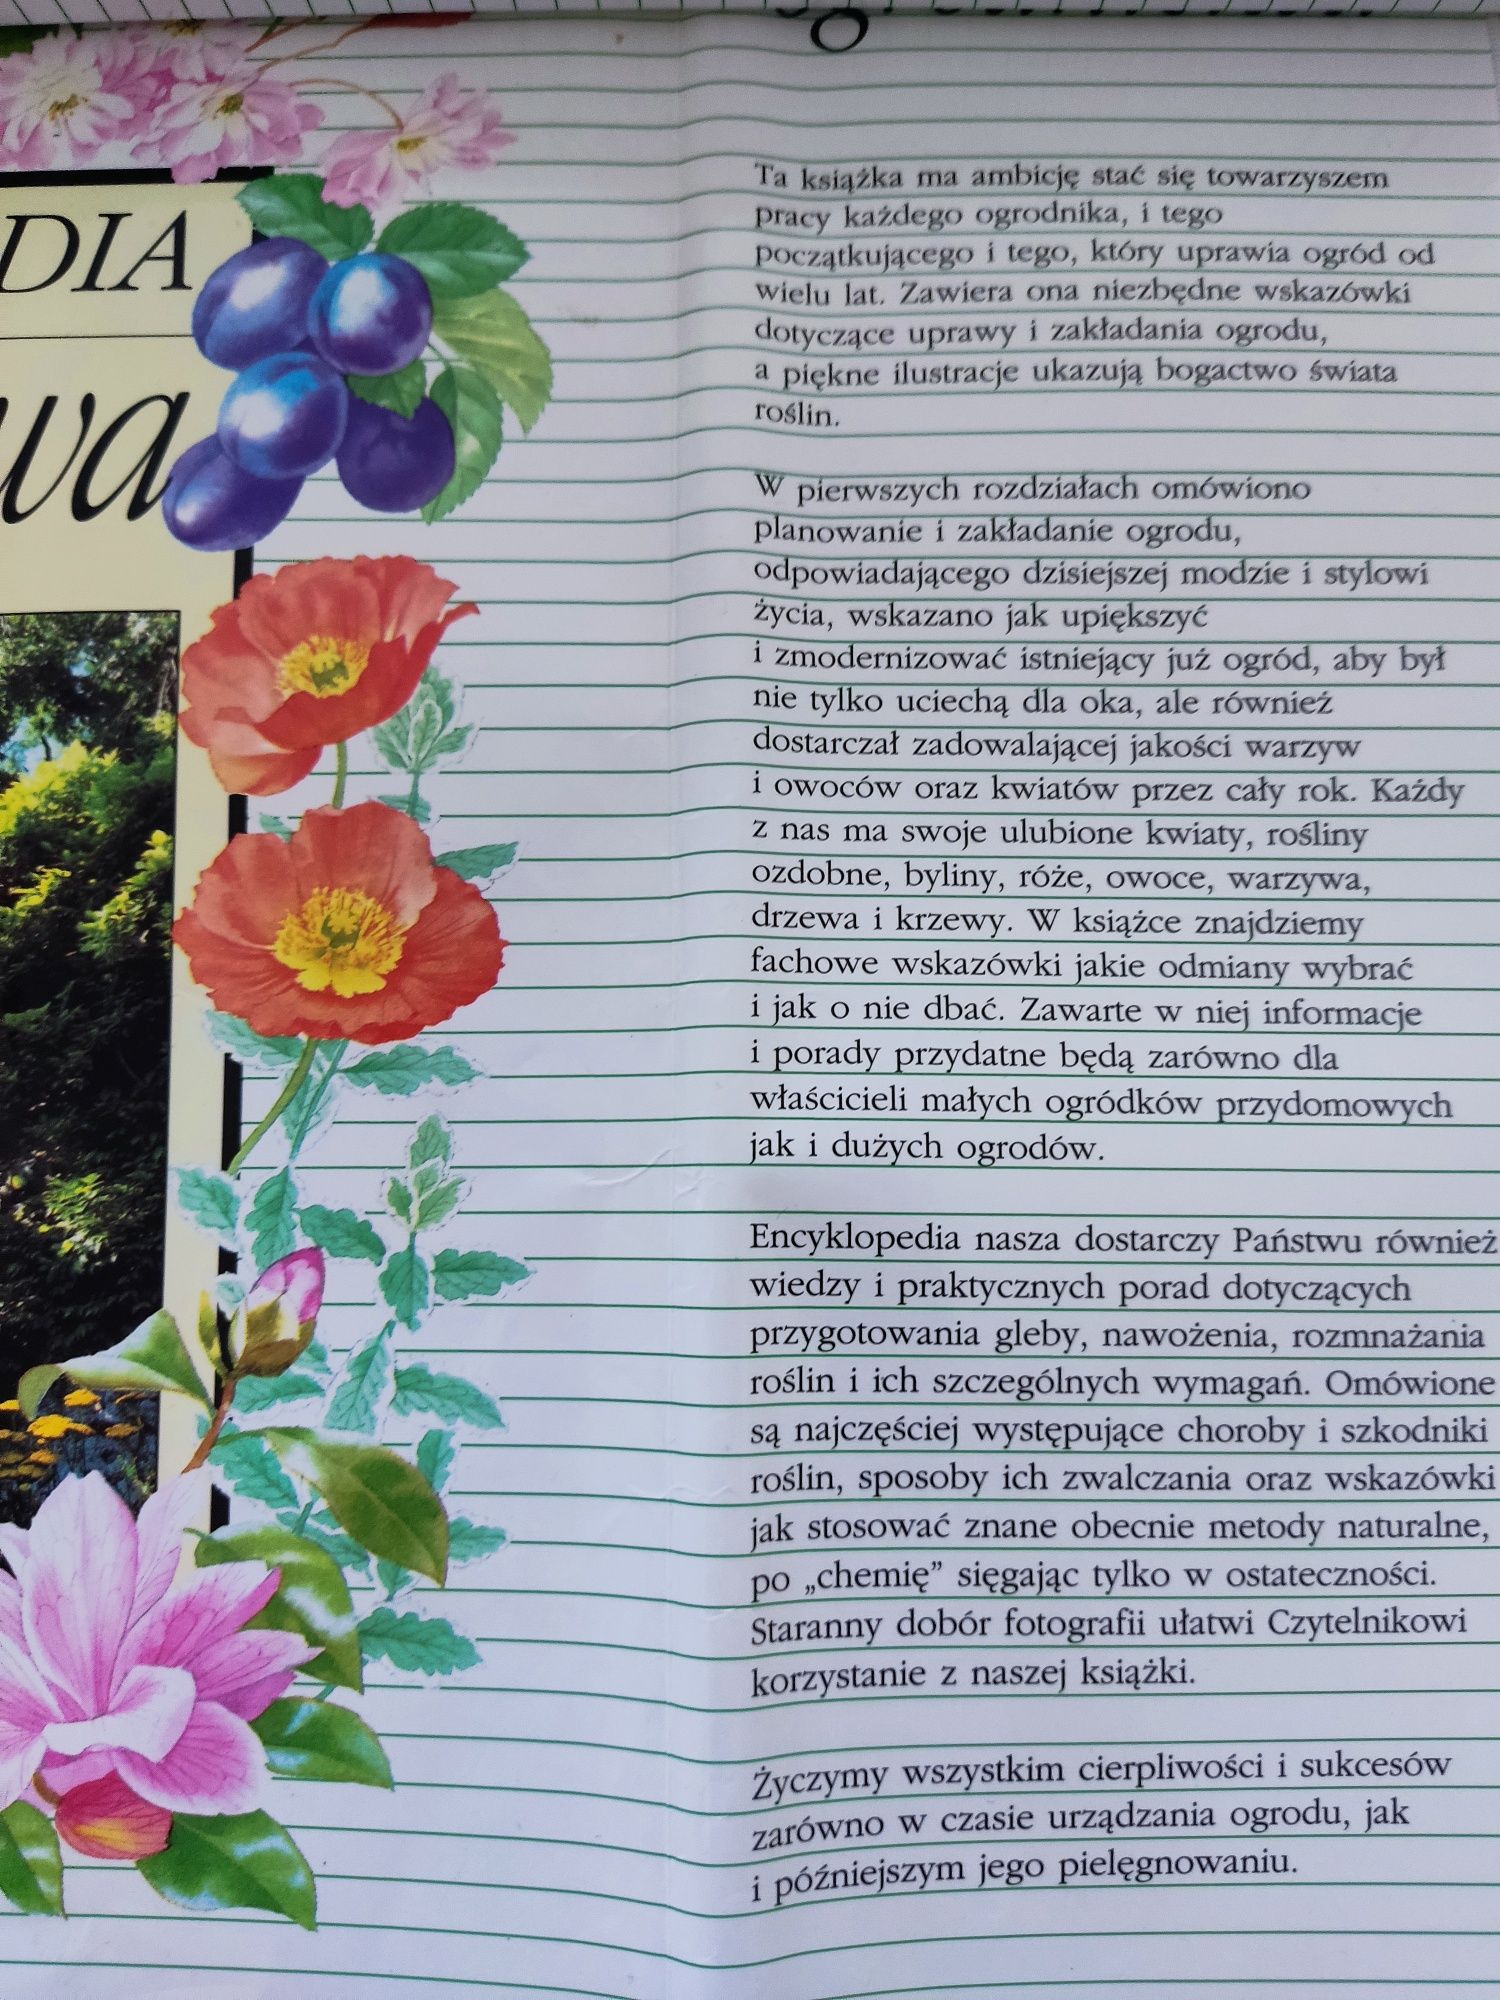 Encyklopedia ogrodnictwa ogród